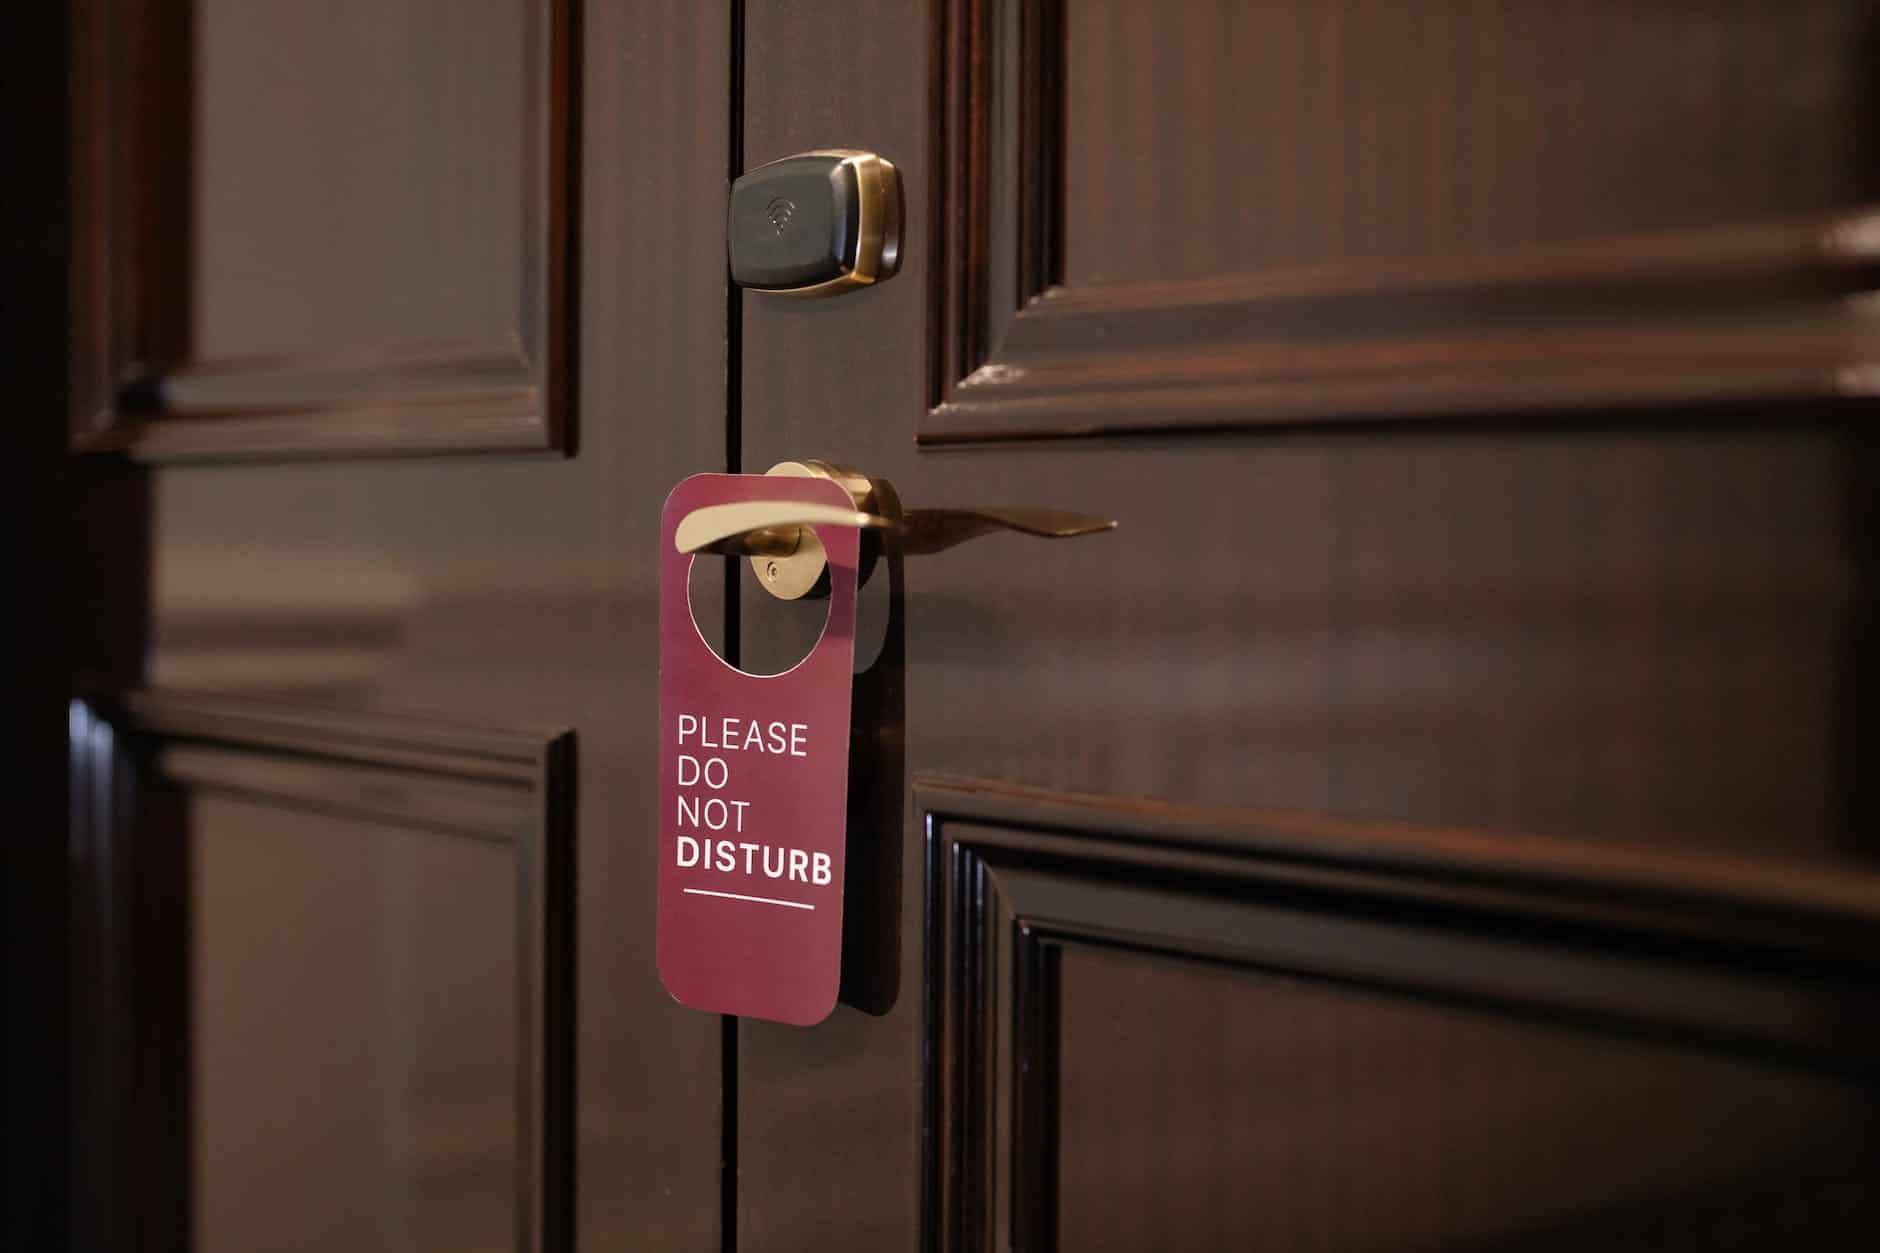 do not disturb sign on door handle